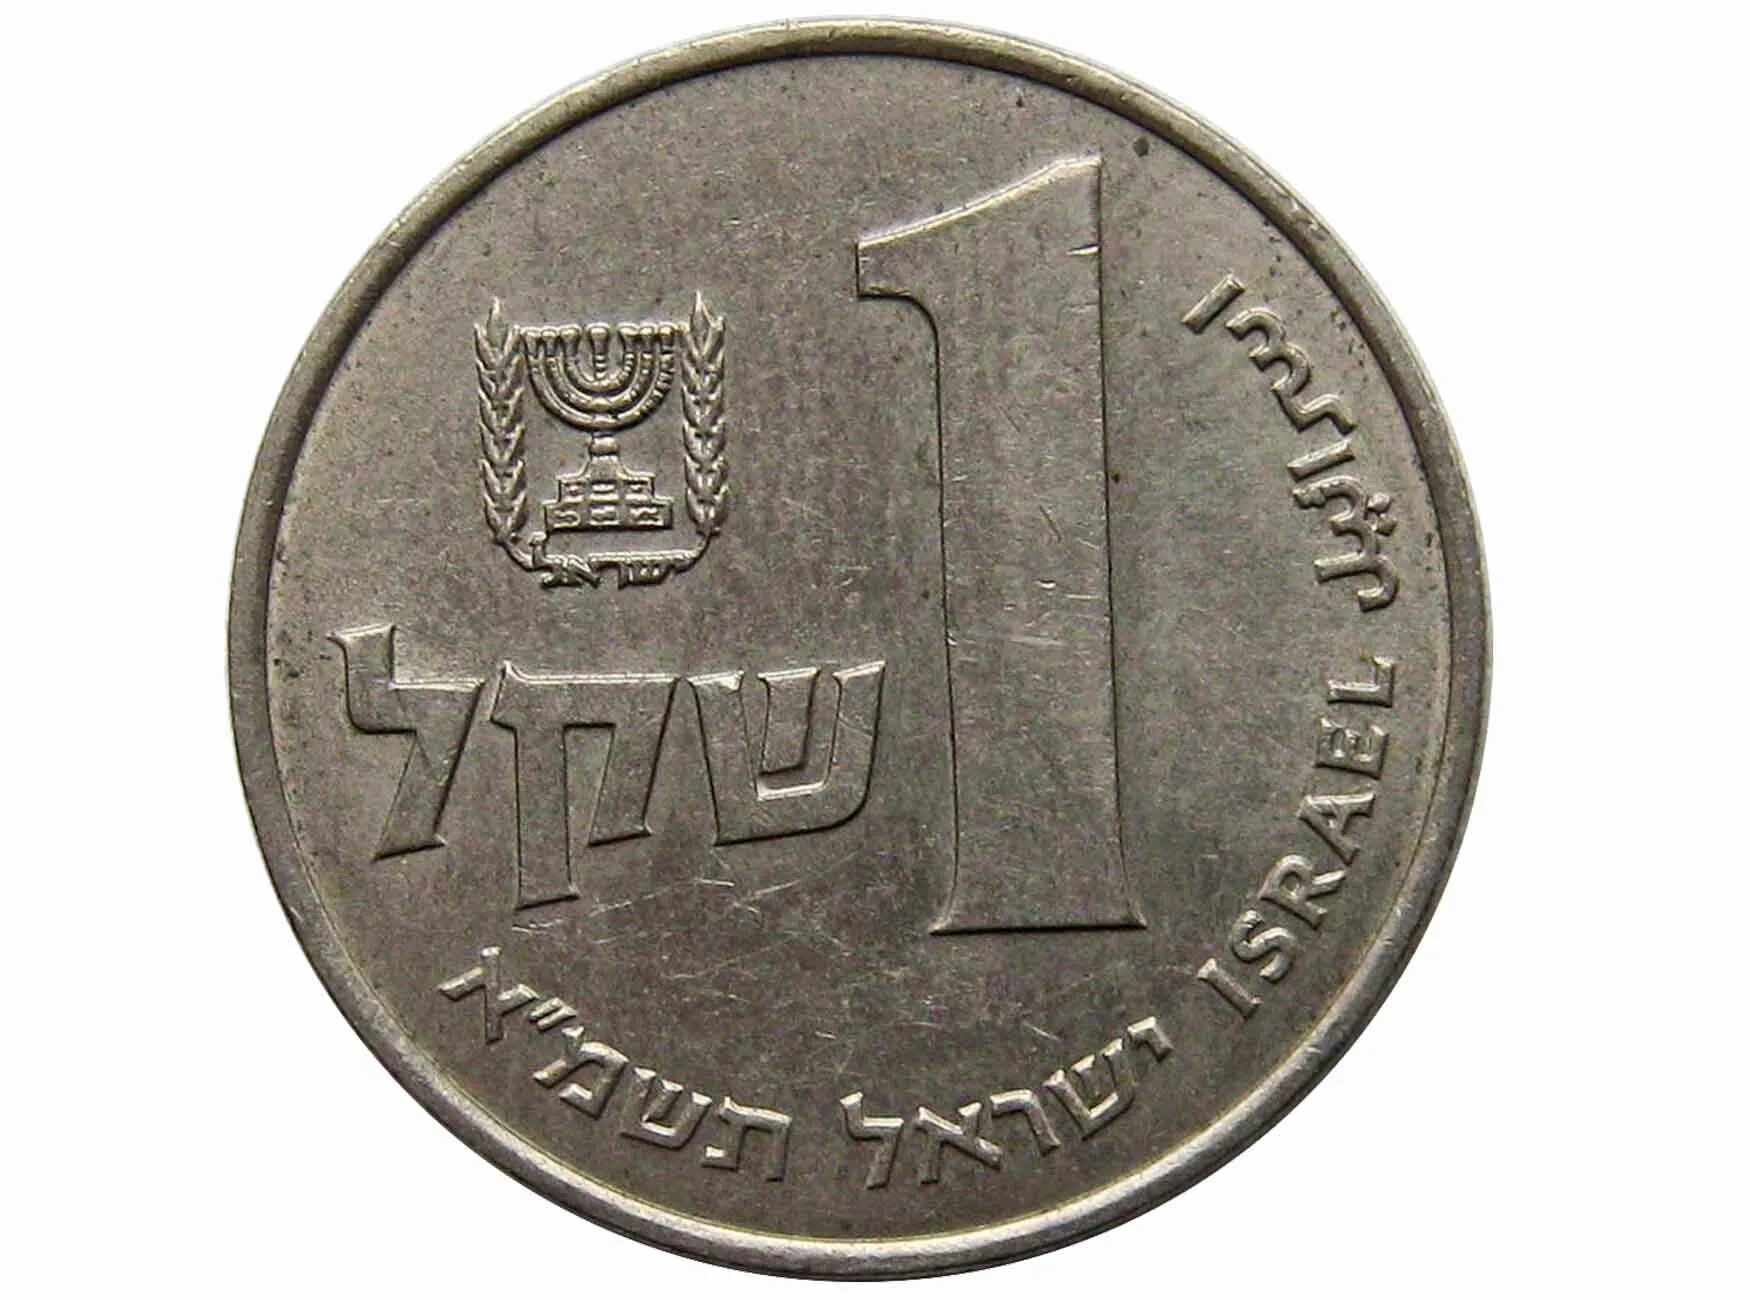 1 Шекель 1981. 1 Шекель монета. Израильская монета 1. Россия в шекели